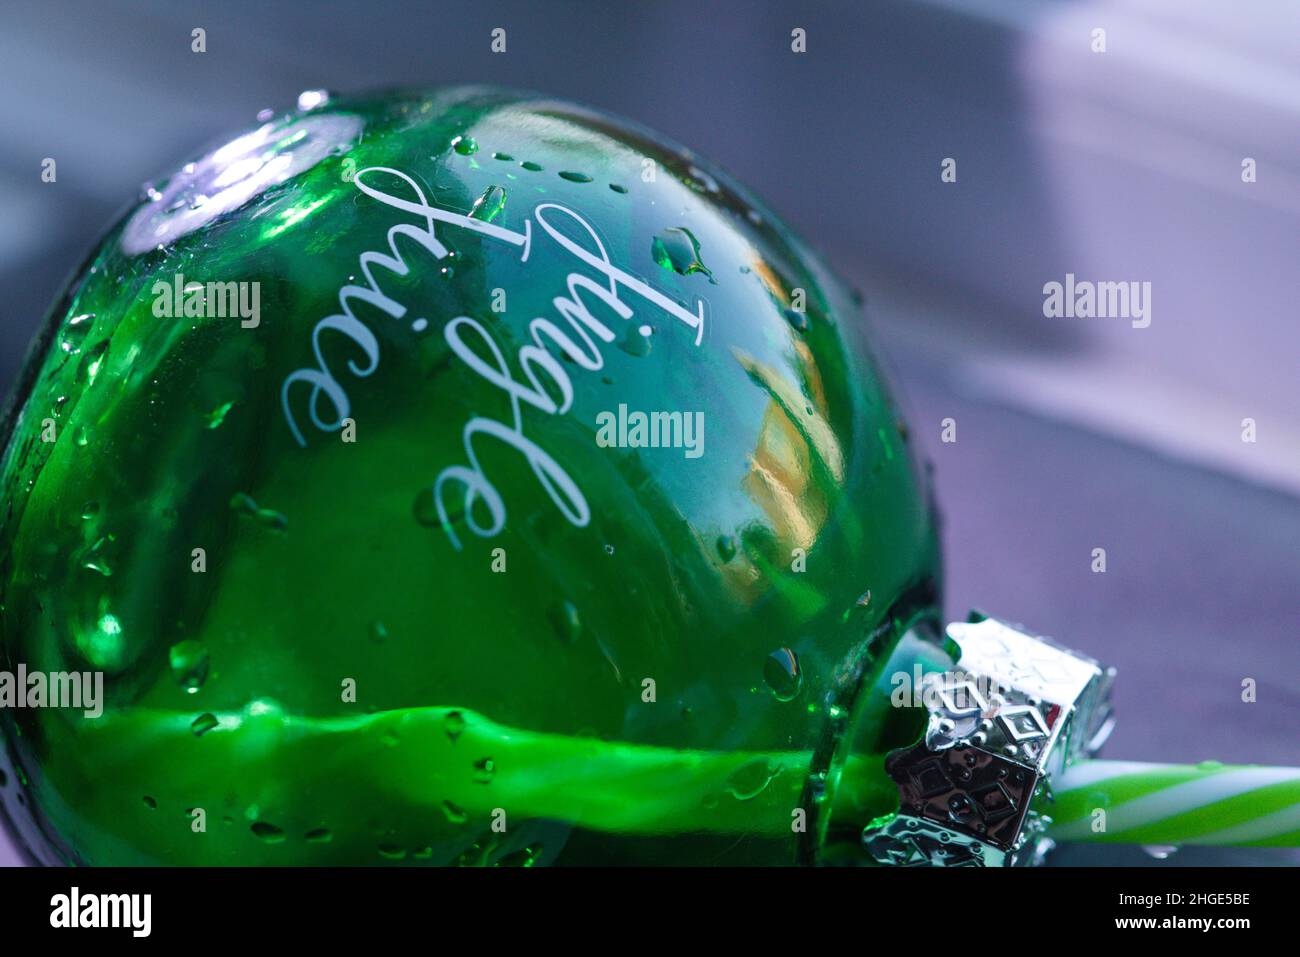 Primo piano di un Bauble in vetro verde umido con decalcomania "Jingle Juice" Foto Stock